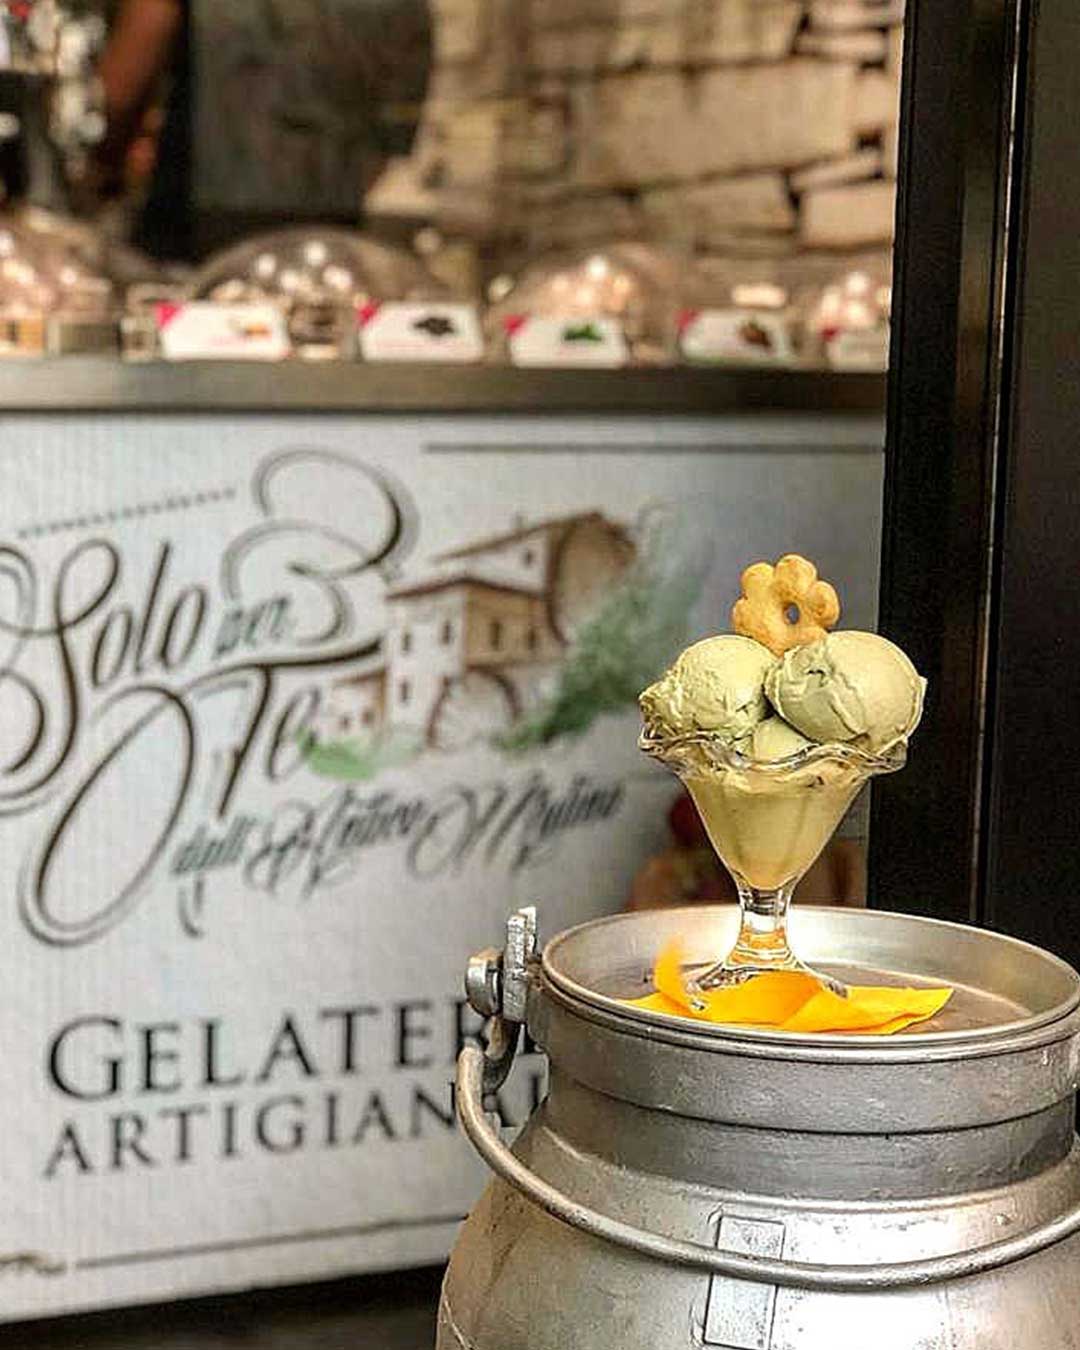 coppetta di gelato artigianale con canestrello dell'antico mulino di ottone.jpg